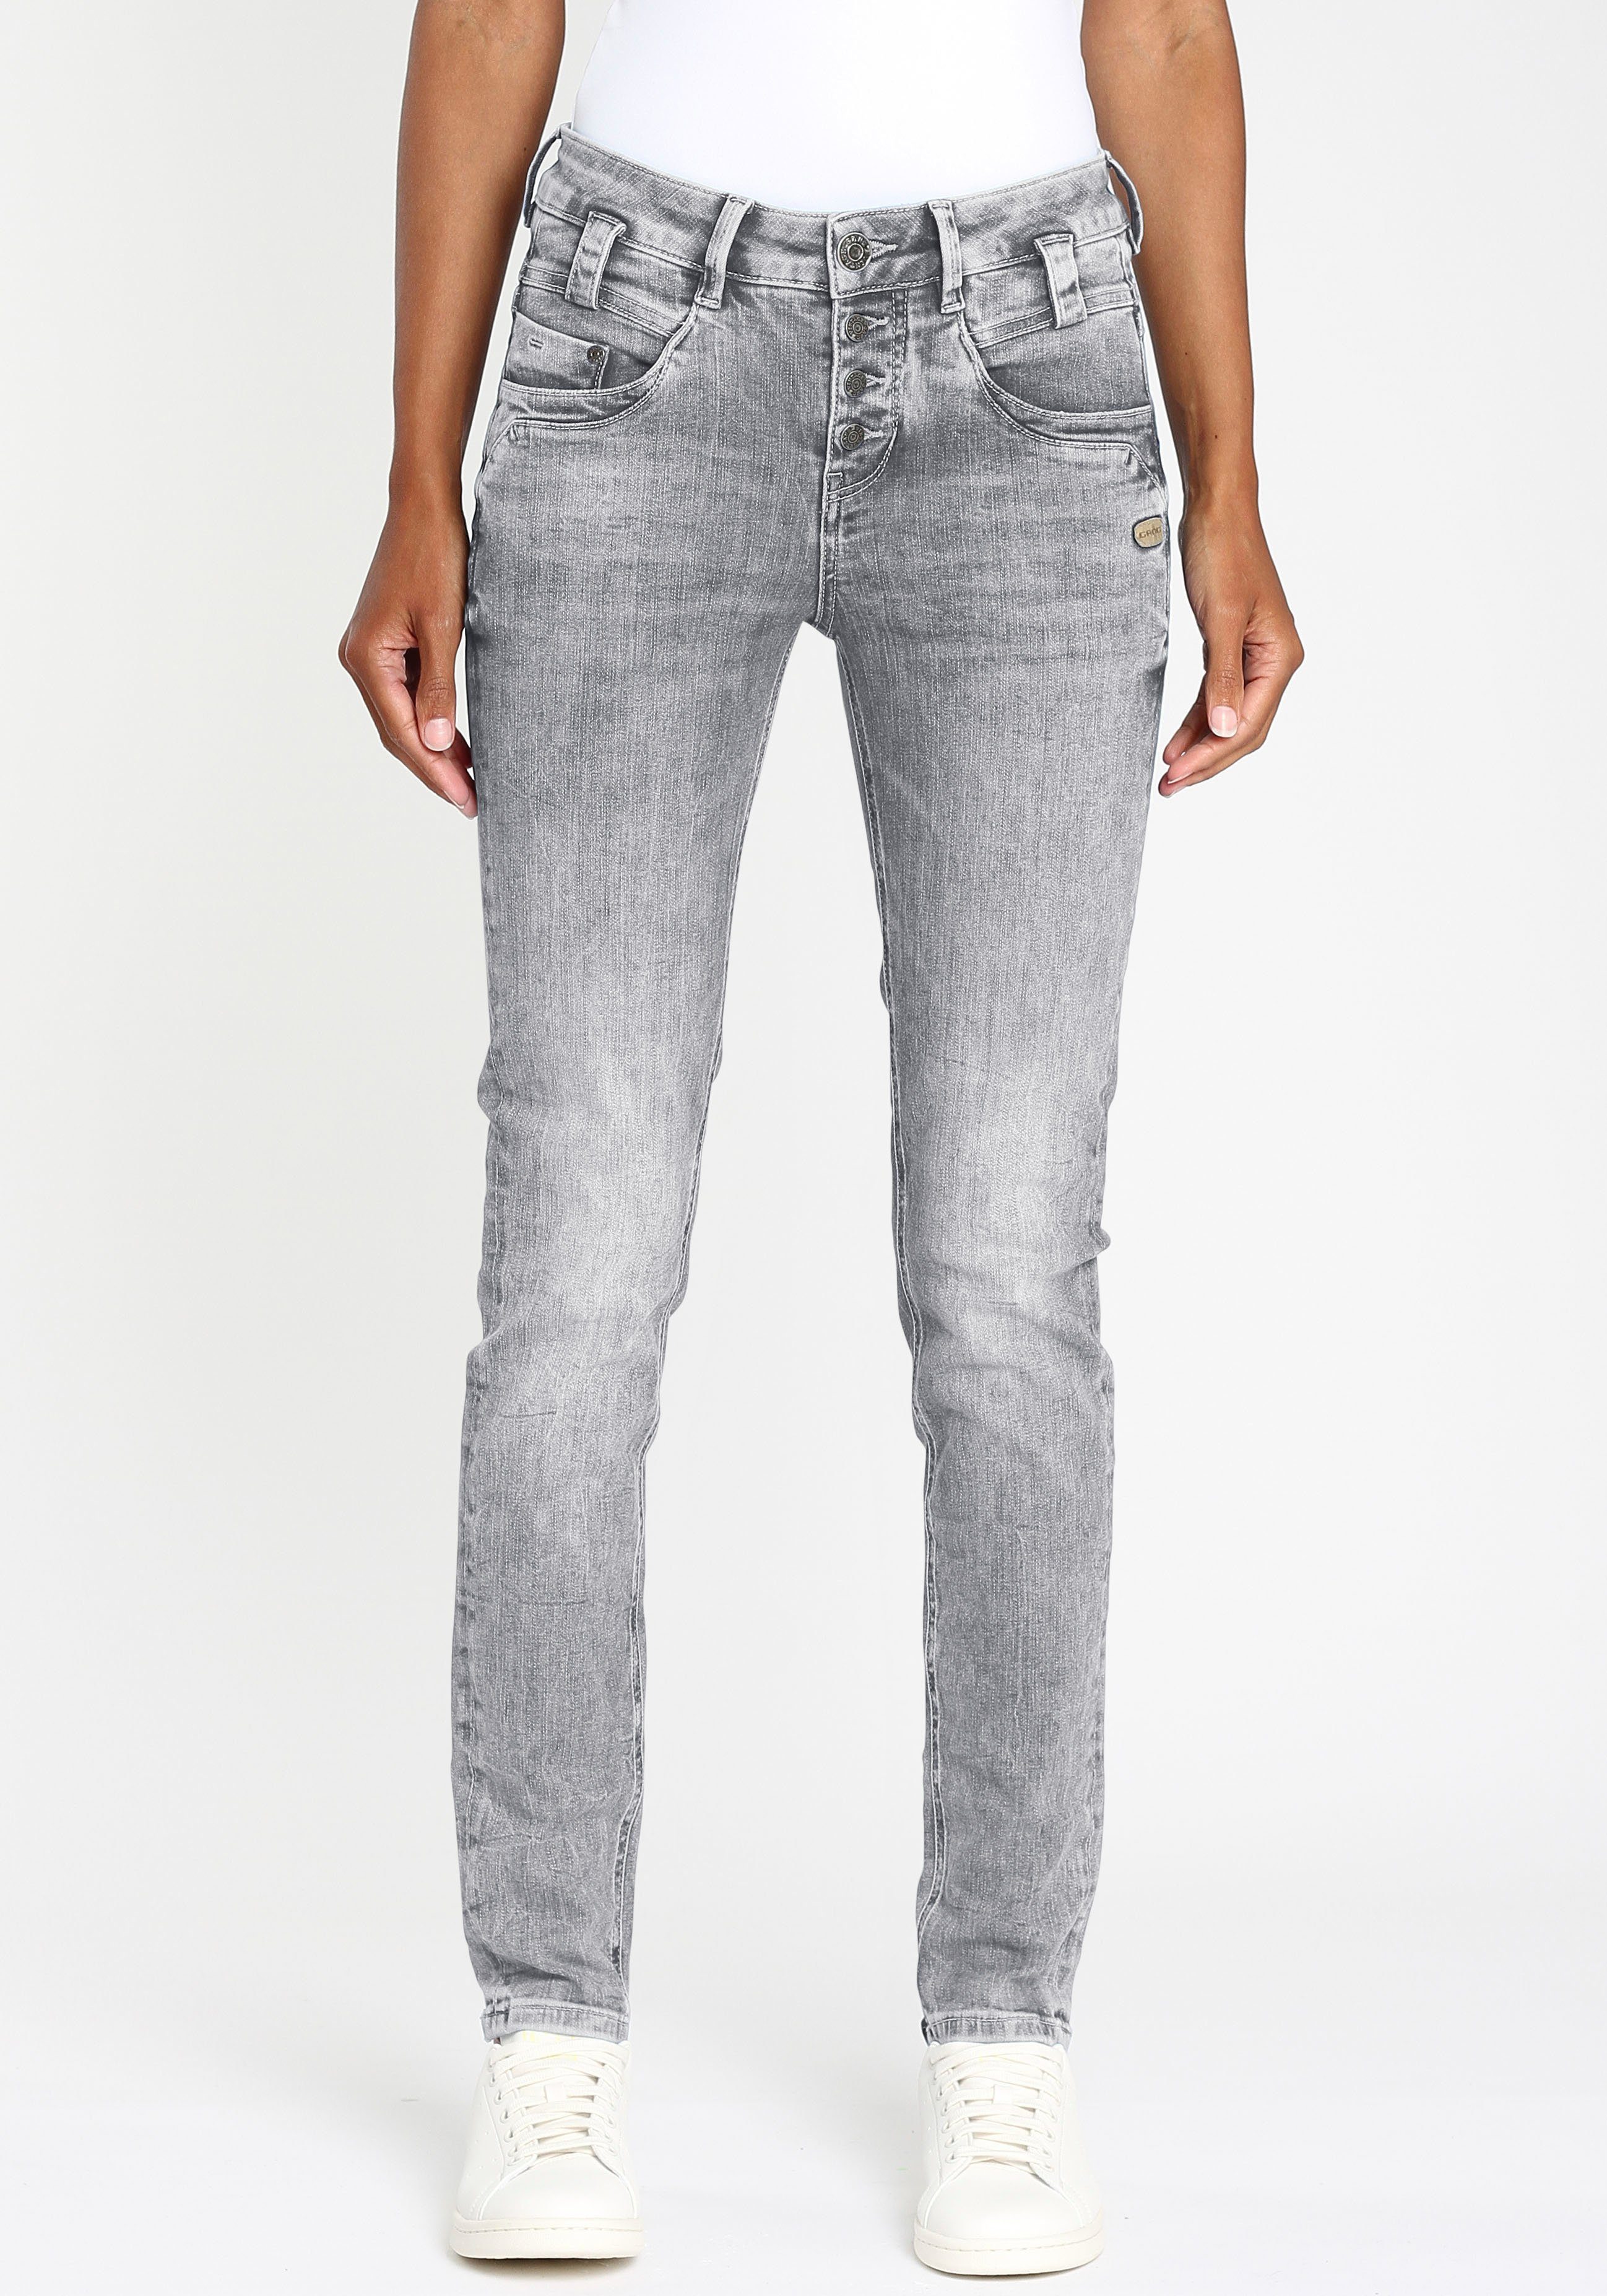 Graue Jeans für Damen online kaufen » Graue Jeanshosen | OTTO